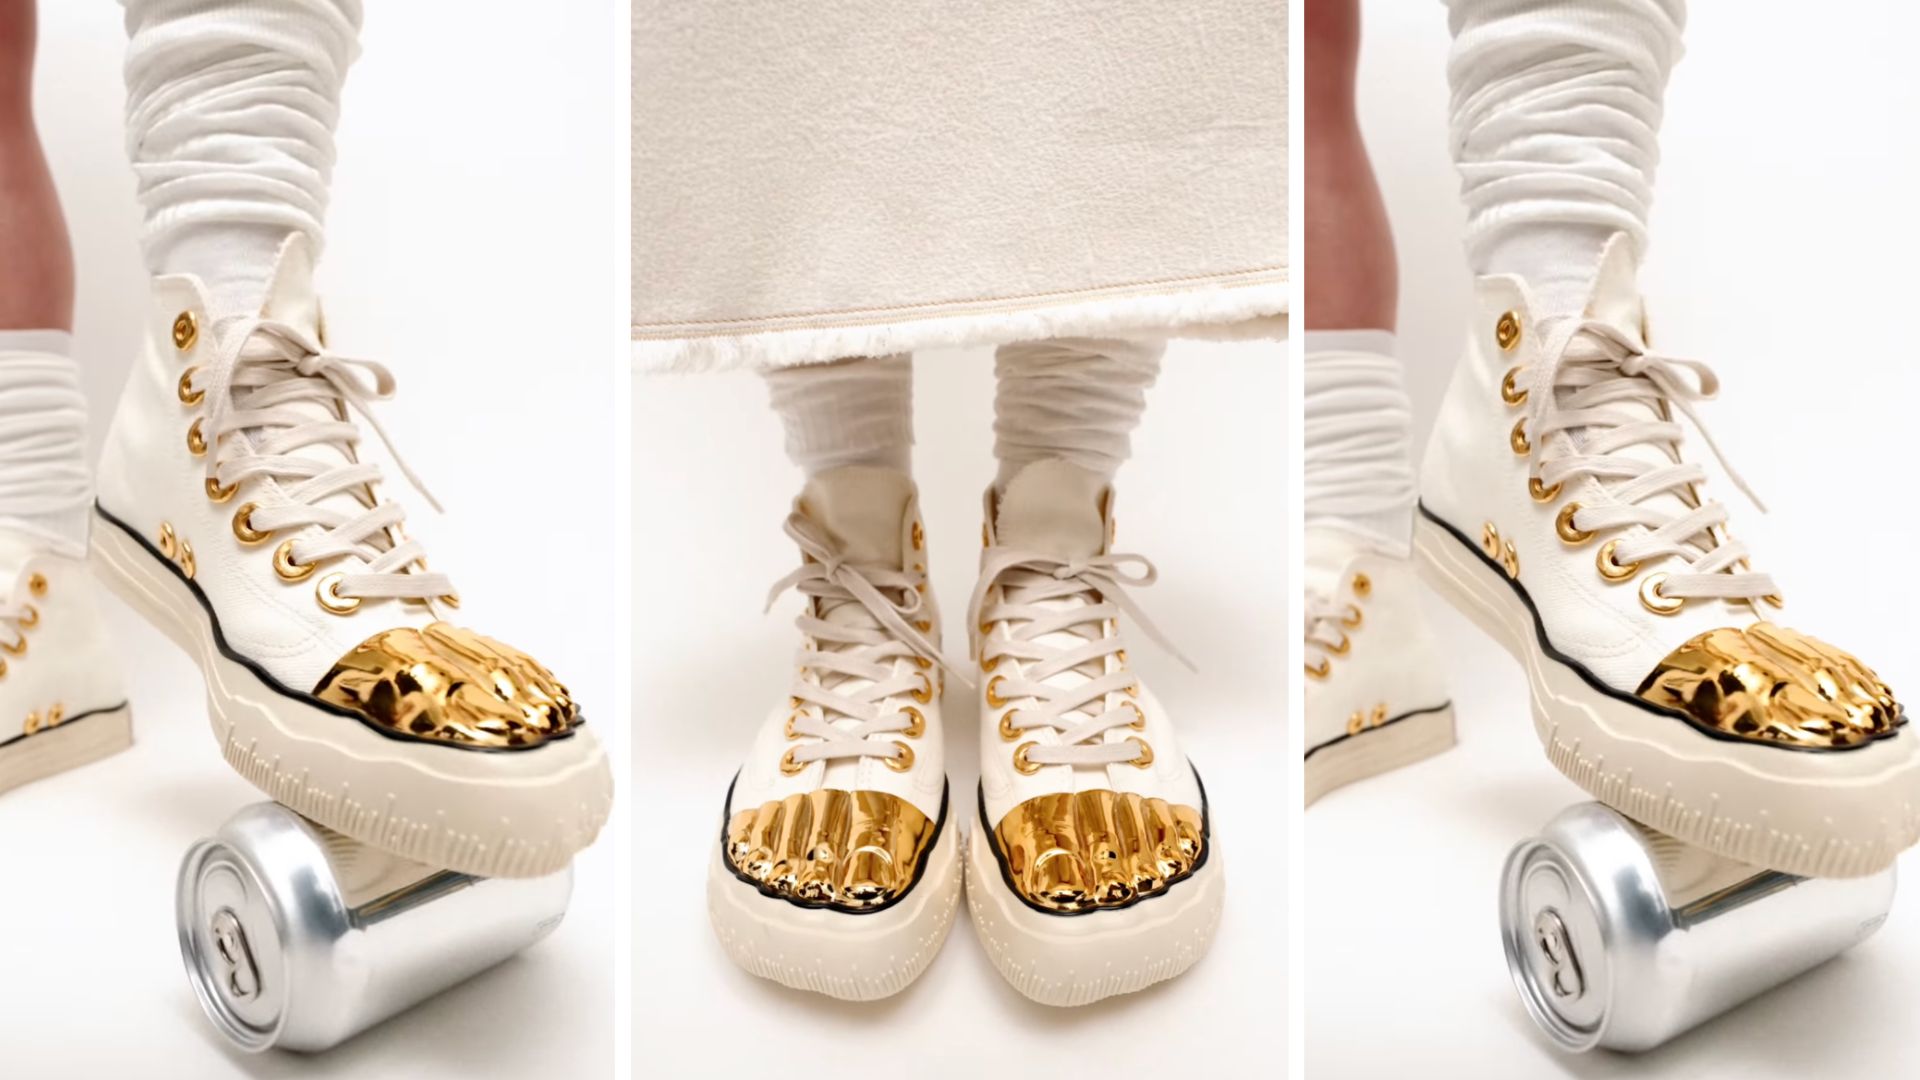 Schiaparelli sort ses premières sneakers, et vous ne devinerez jamais le prix de ce design à orteils dorés